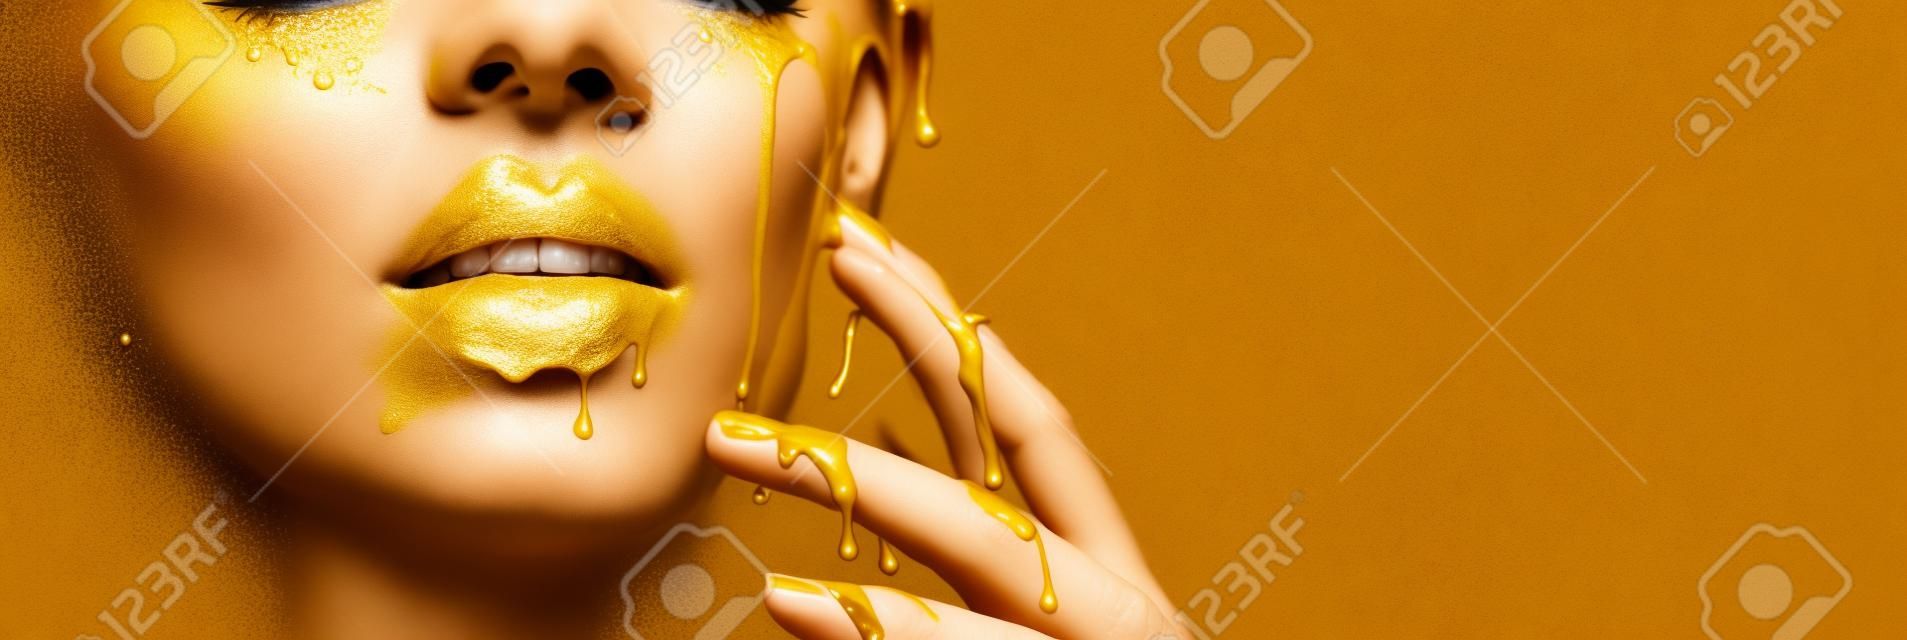 Goldene Farbflecken tropfen von den Gesichtslippen und der Hand, goldene Flüssigkeitstropfen auf dem Mund des schönen Modellmädchens, kreatives abstraktes Make-up. Schönheitsfrauengesicht